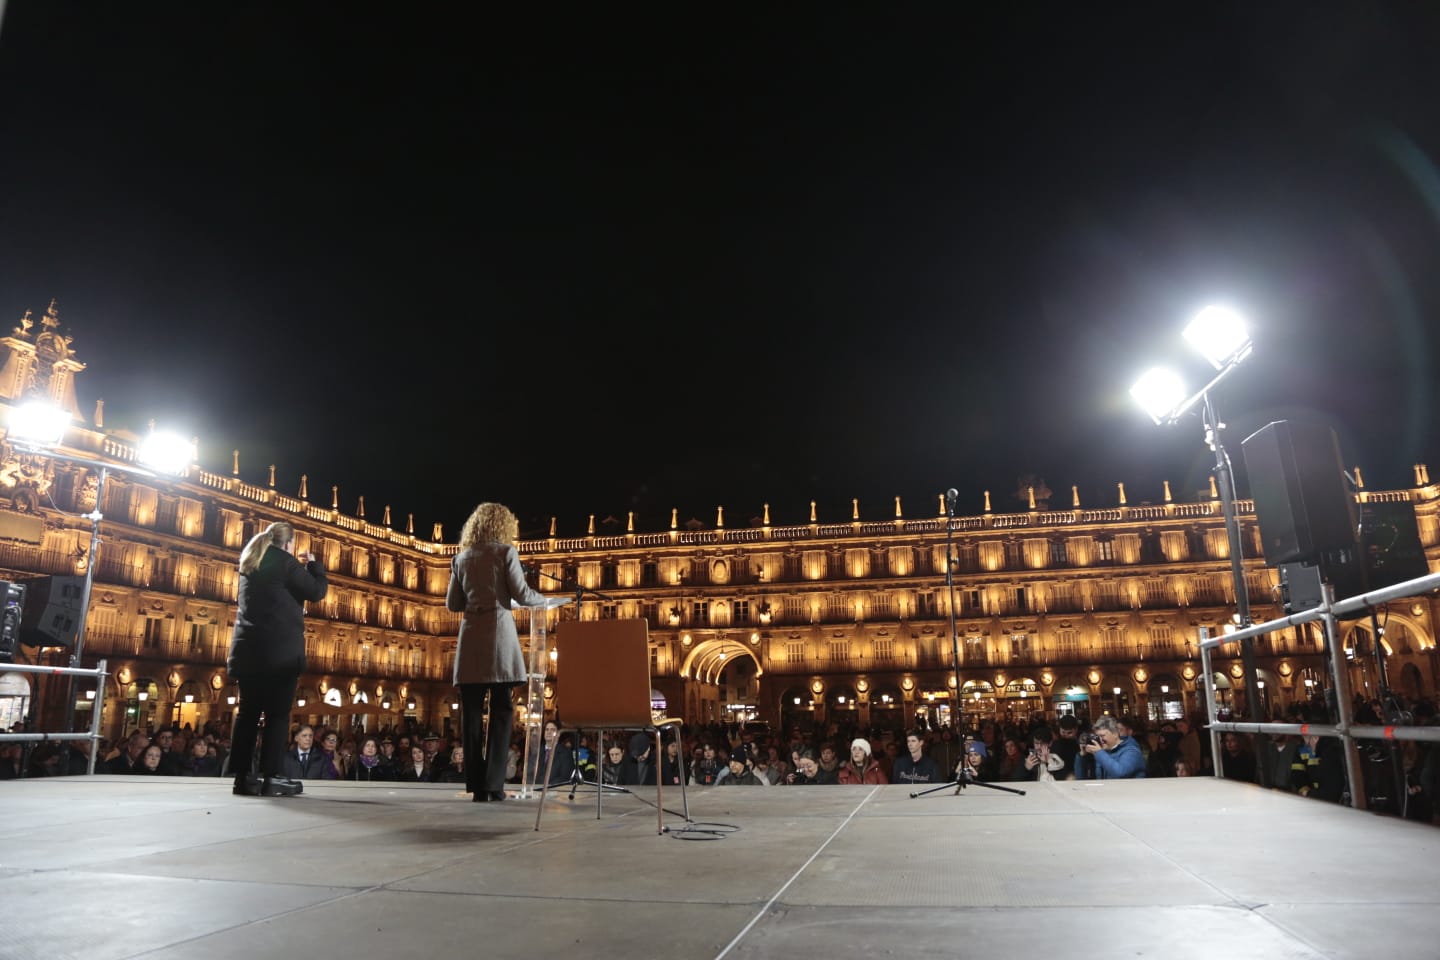 Fotos: La protesta contra la violencia de género en Salamanca